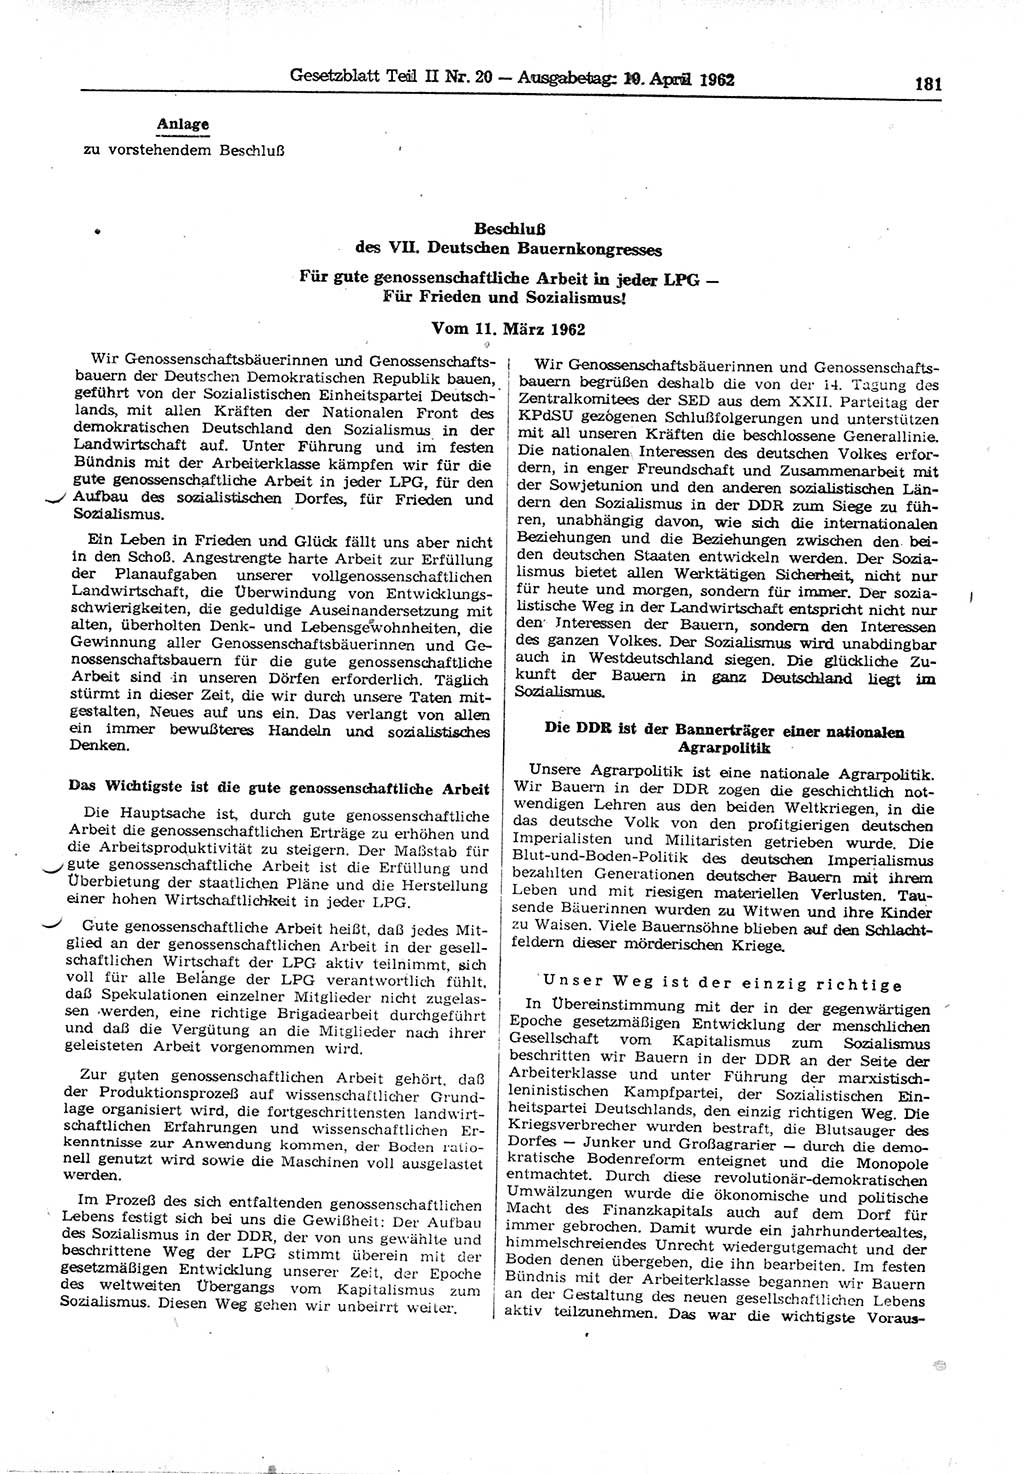 Gesetzblatt (GBl.) der Deutschen Demokratischen Republik (DDR) Teil ⅠⅠ 1962, Seite 181 (GBl. DDR ⅠⅠ 1962, S. 181)